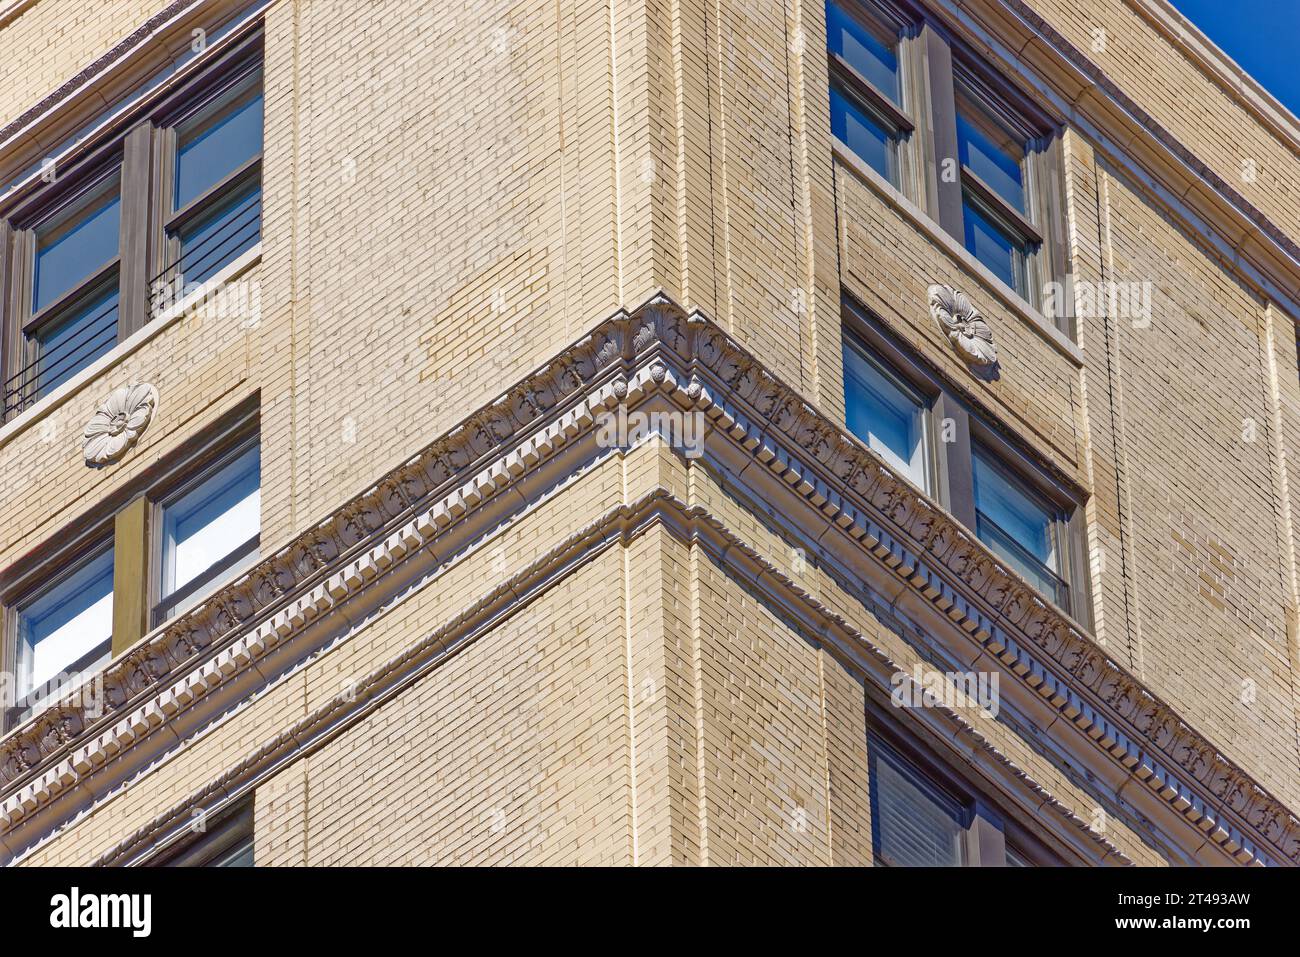 Emery Roth entwarf 825 West End Avenue im neoklassizistischen Stil. Das Gebäude ist ein Zwillingsgebäude des 186 Riverside Drive für denselben Bauträger. Stockfoto